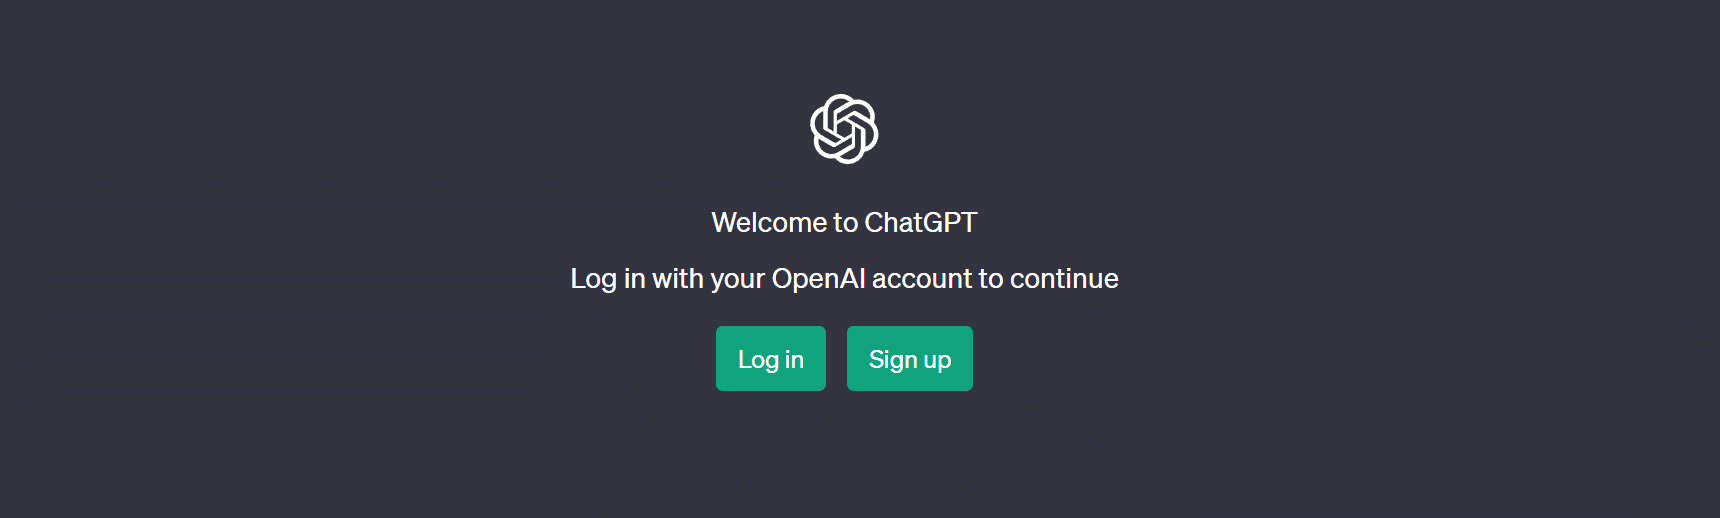 Ikona przedstawiająca zrzut ekranu / obraz logowania do ChatGPT